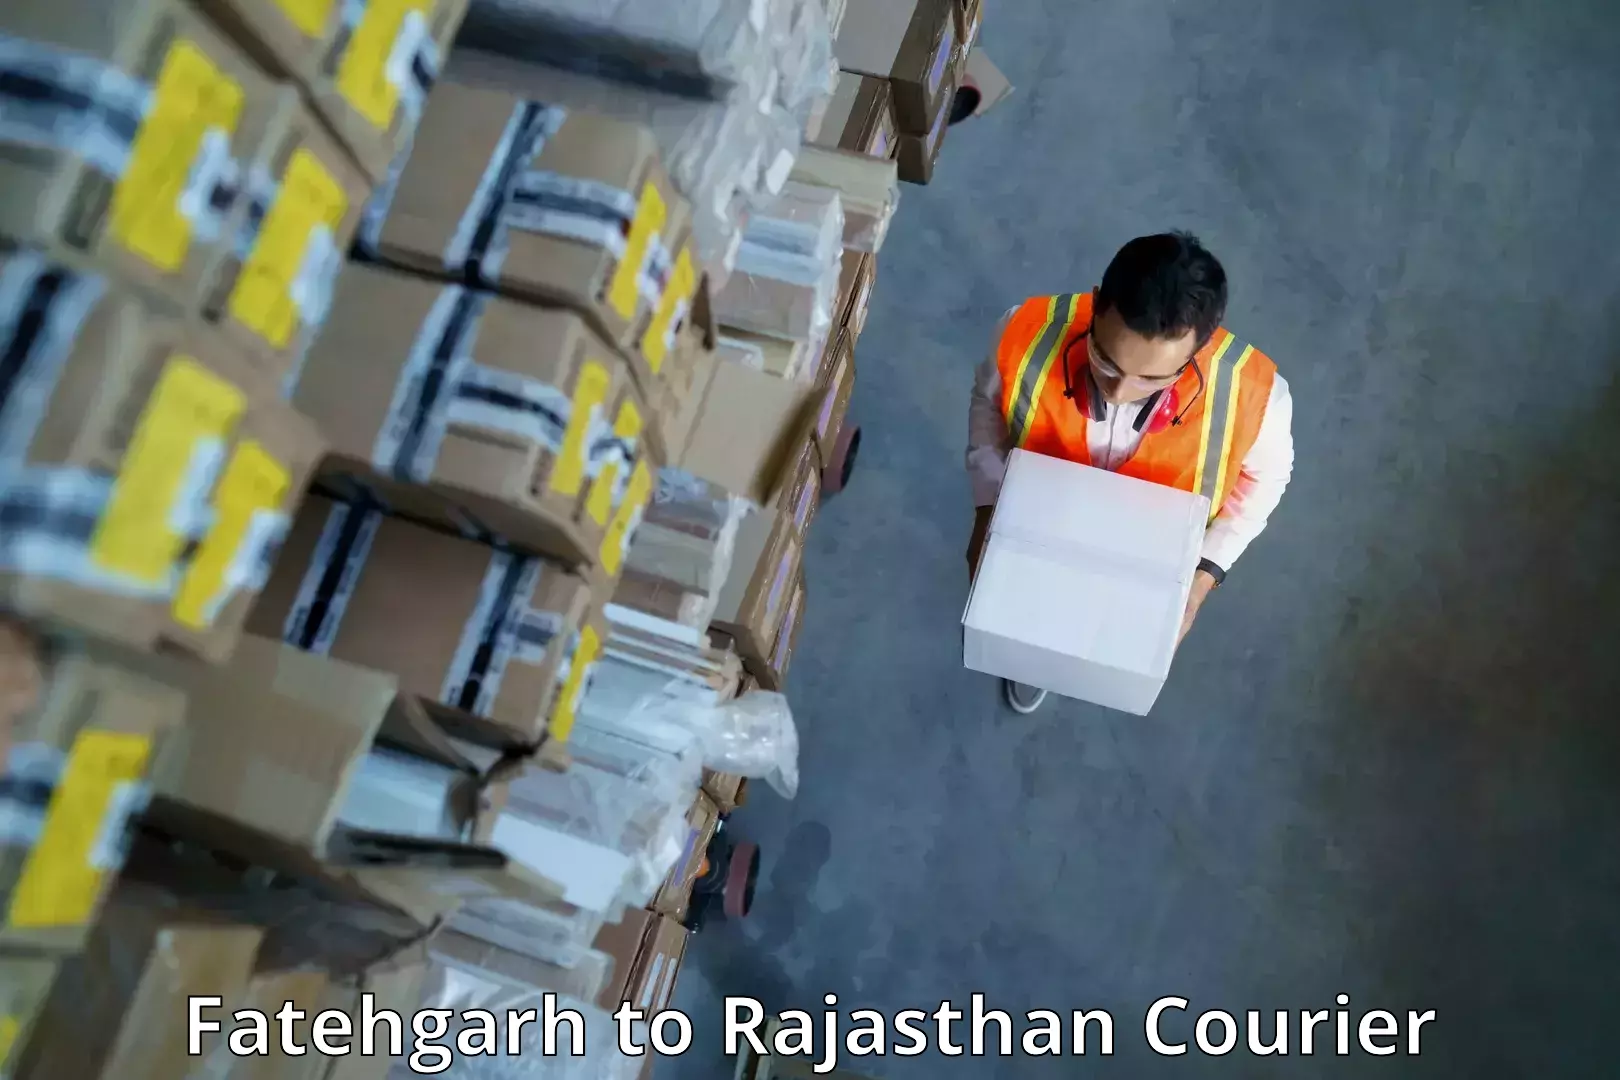 High-speed parcel service Fatehgarh to Bilara